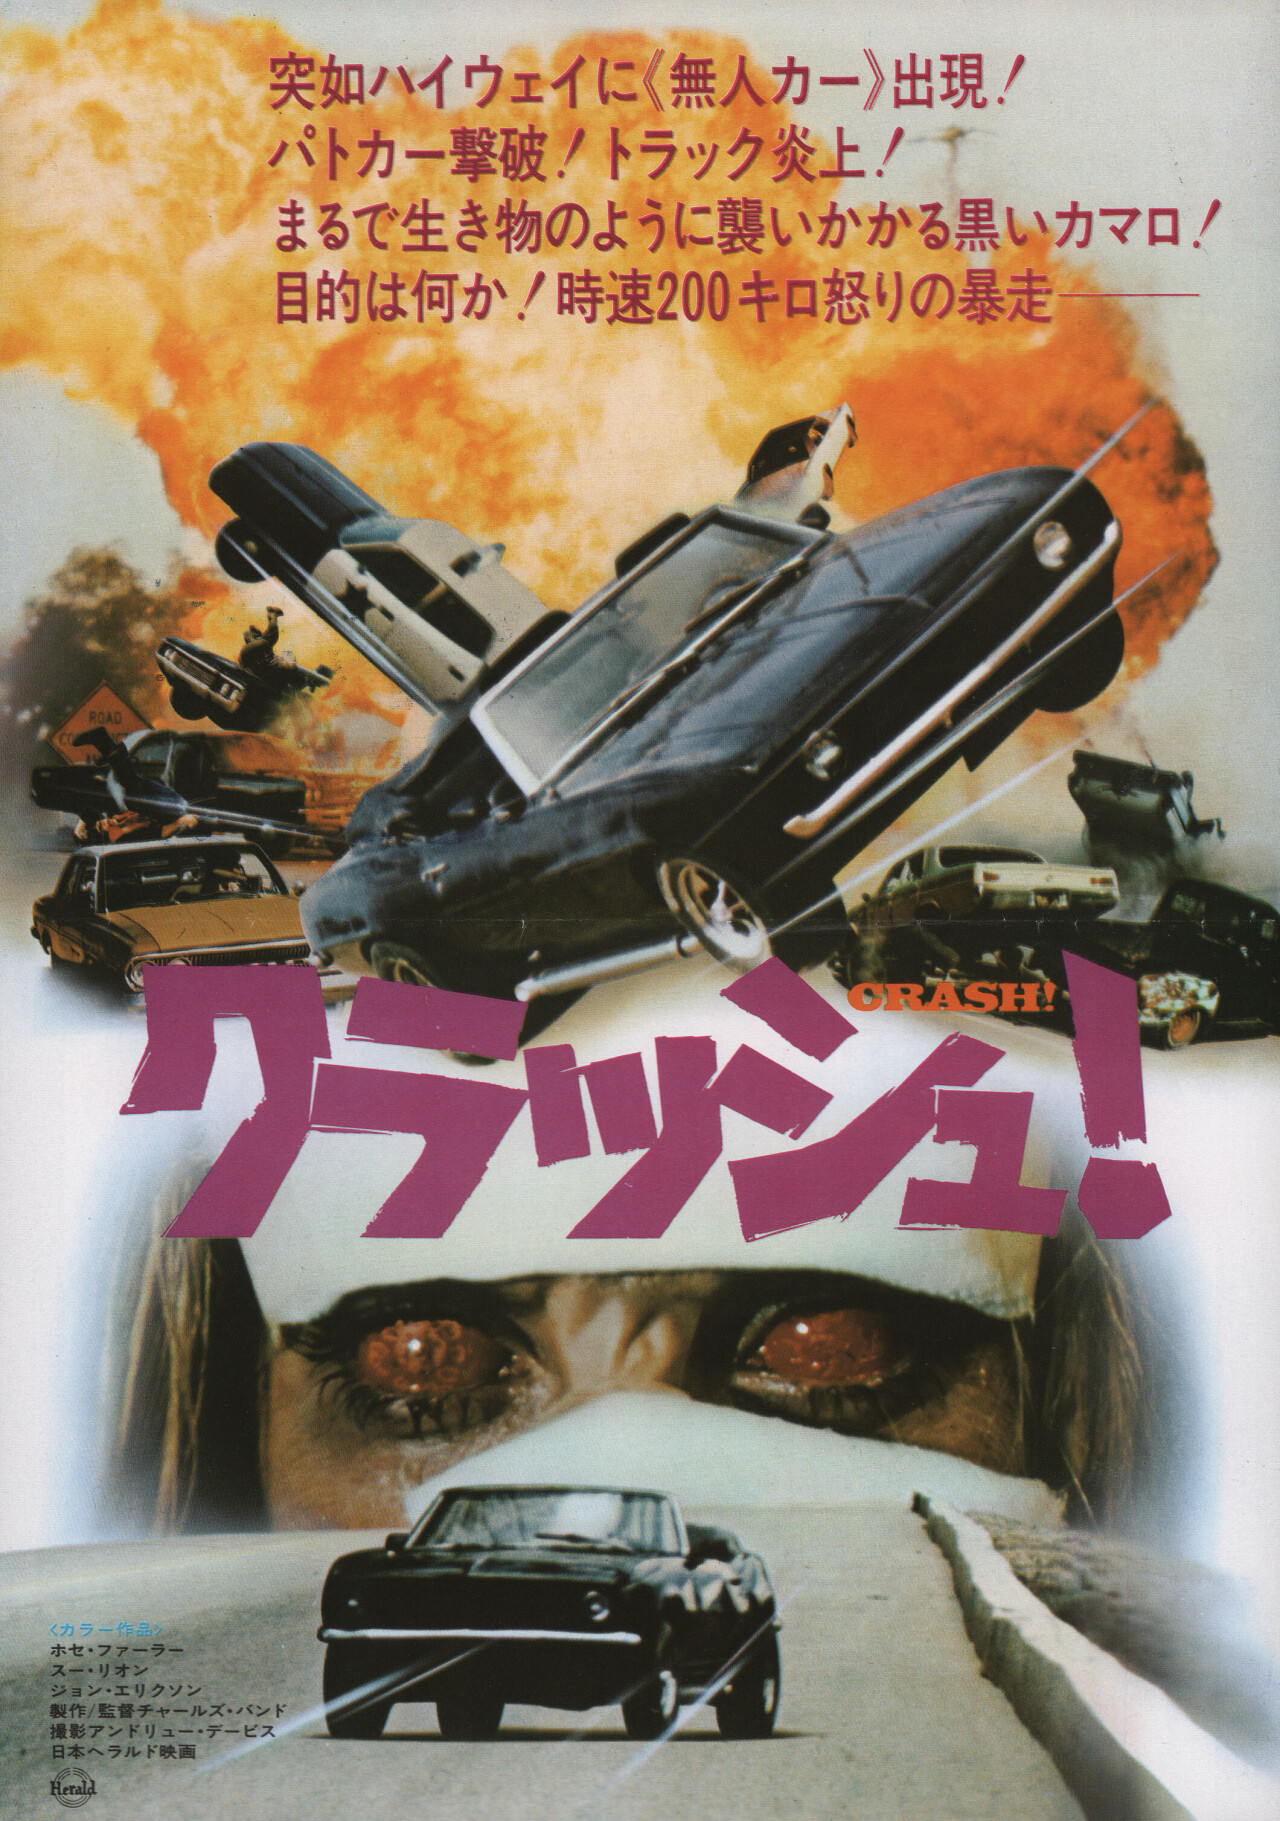 Авария (Crash!, 1977), режиссёр Чарльз Бэнд, японский постер к фильму (ужасы, 1977 год)